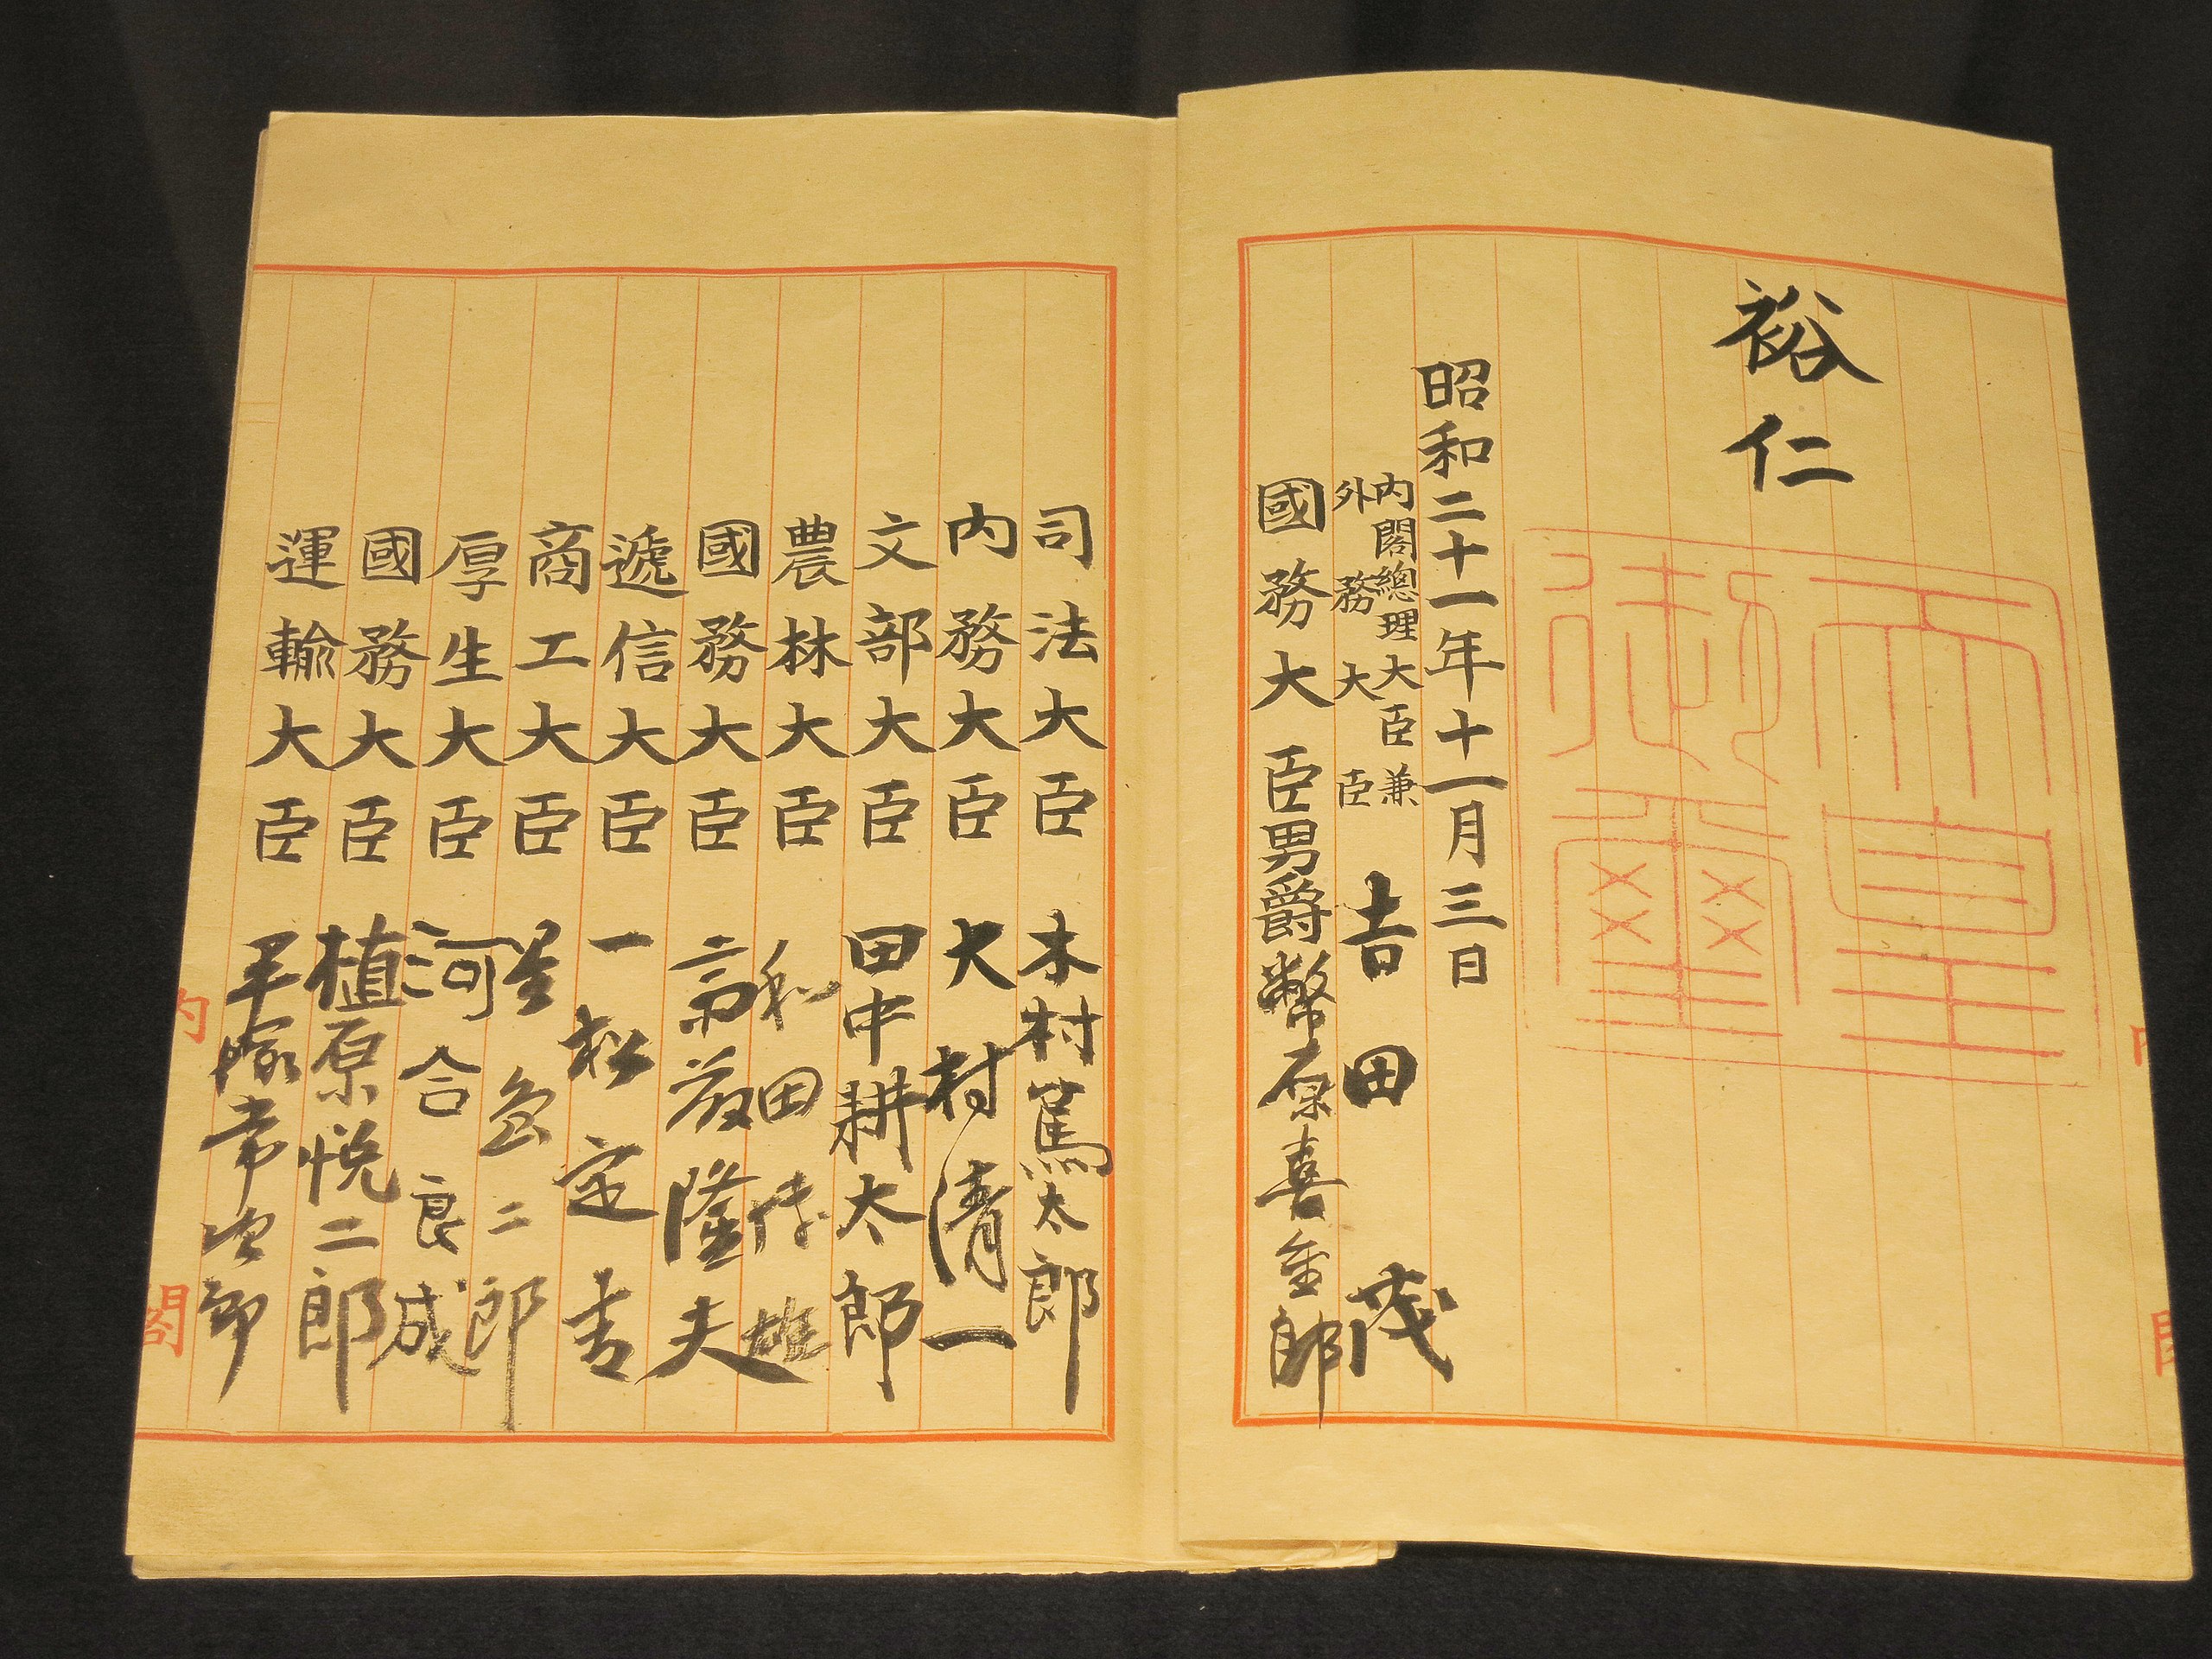 Die Verfassung wurde von Kaiser Hirohito (rechts oben, inkl. kaiserliches Siegel), Premierminister Yoshida Shigeru und den Kabinettsmitgliedern unterzeichnet.